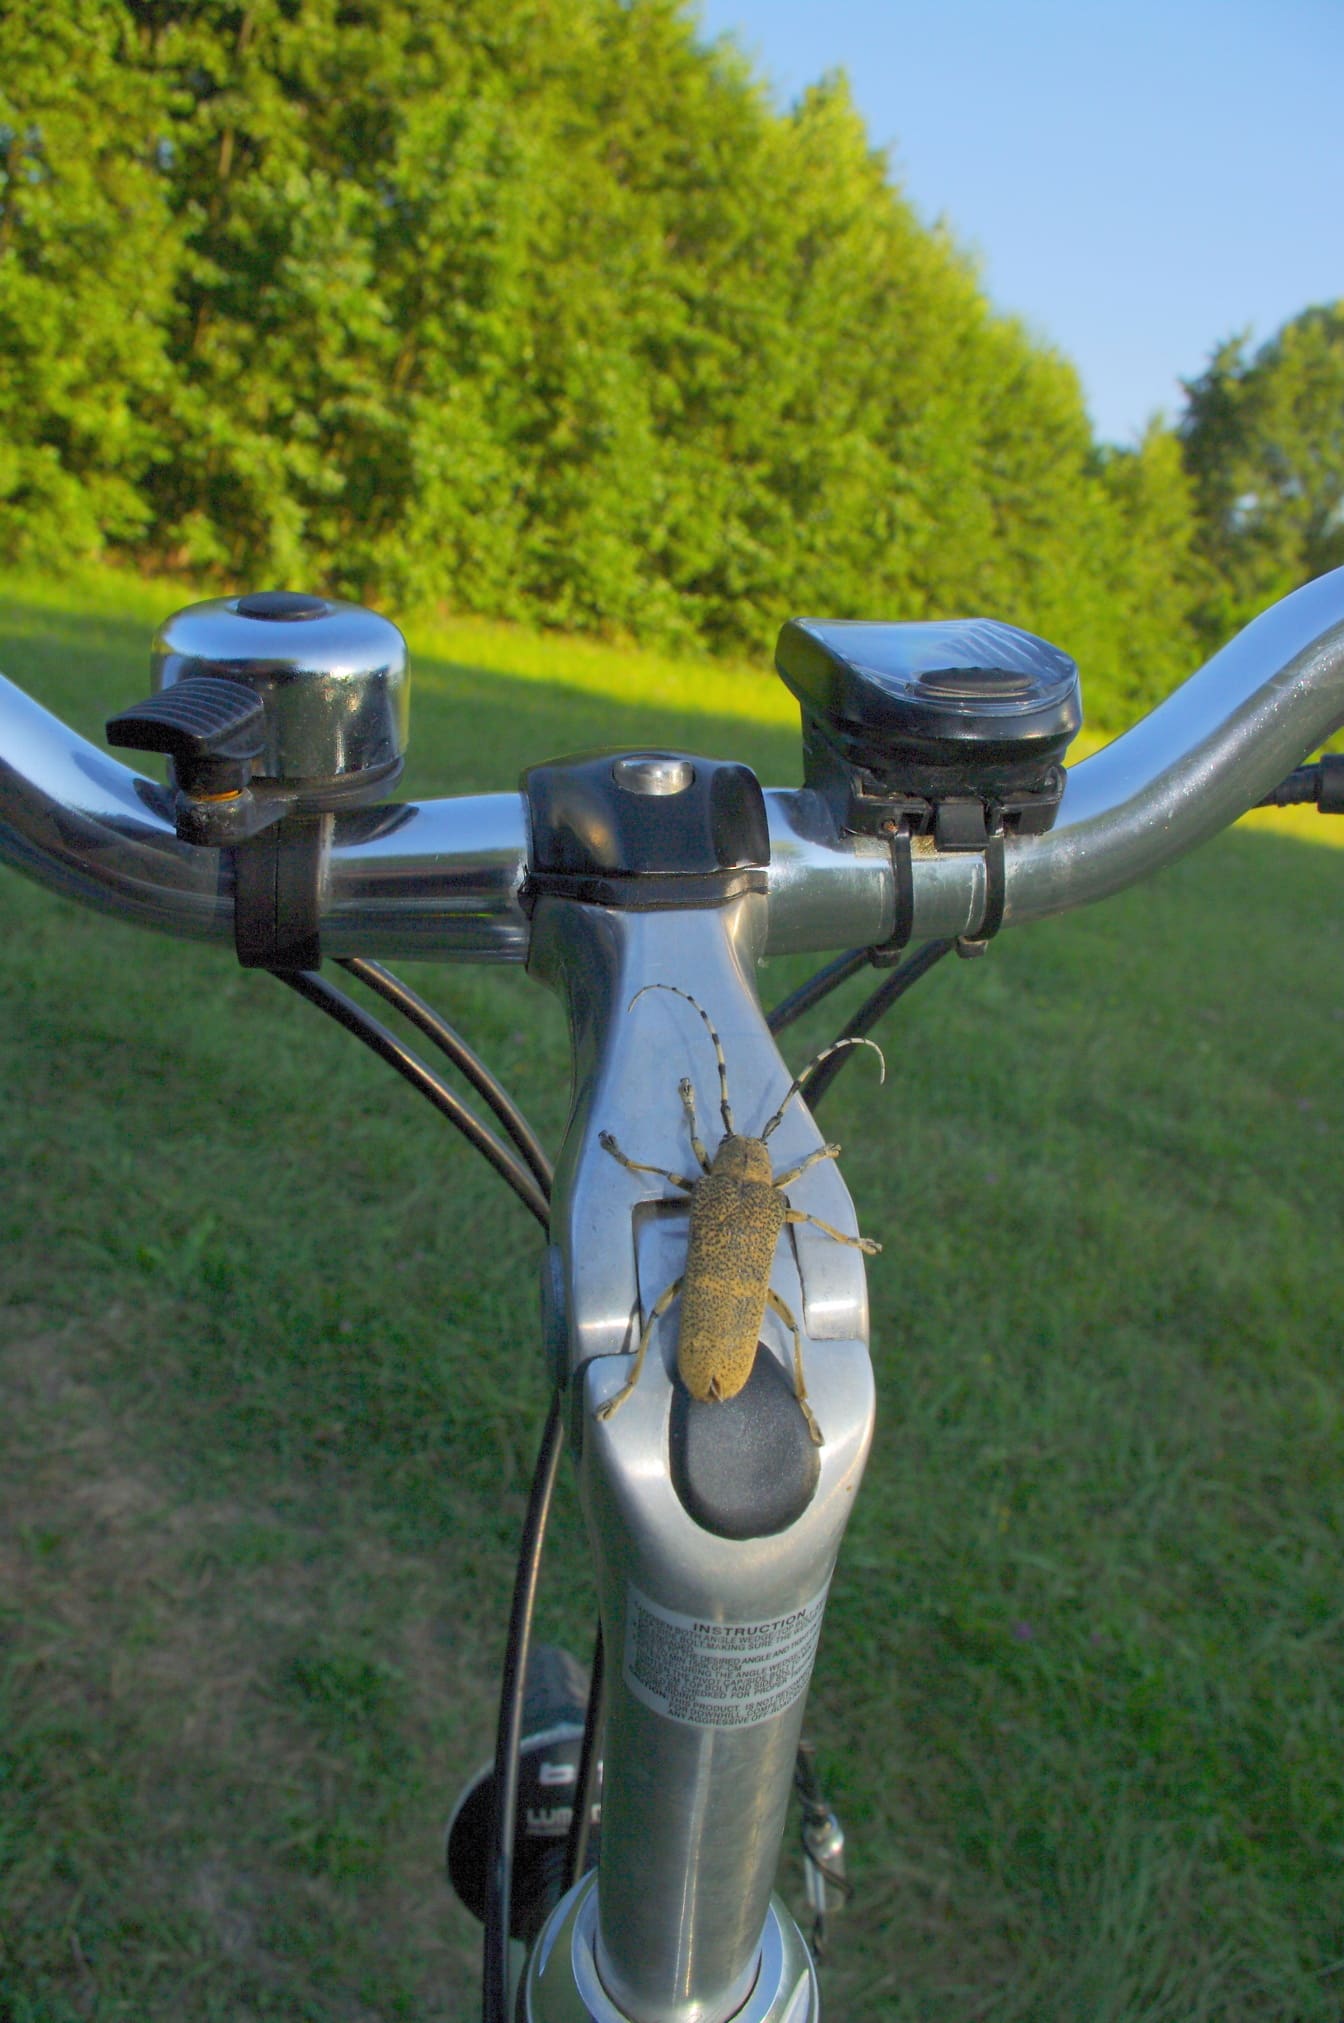 자전거의 핸들에 큰 포플러 천공 (Saperda carcharias) 딱정벌레